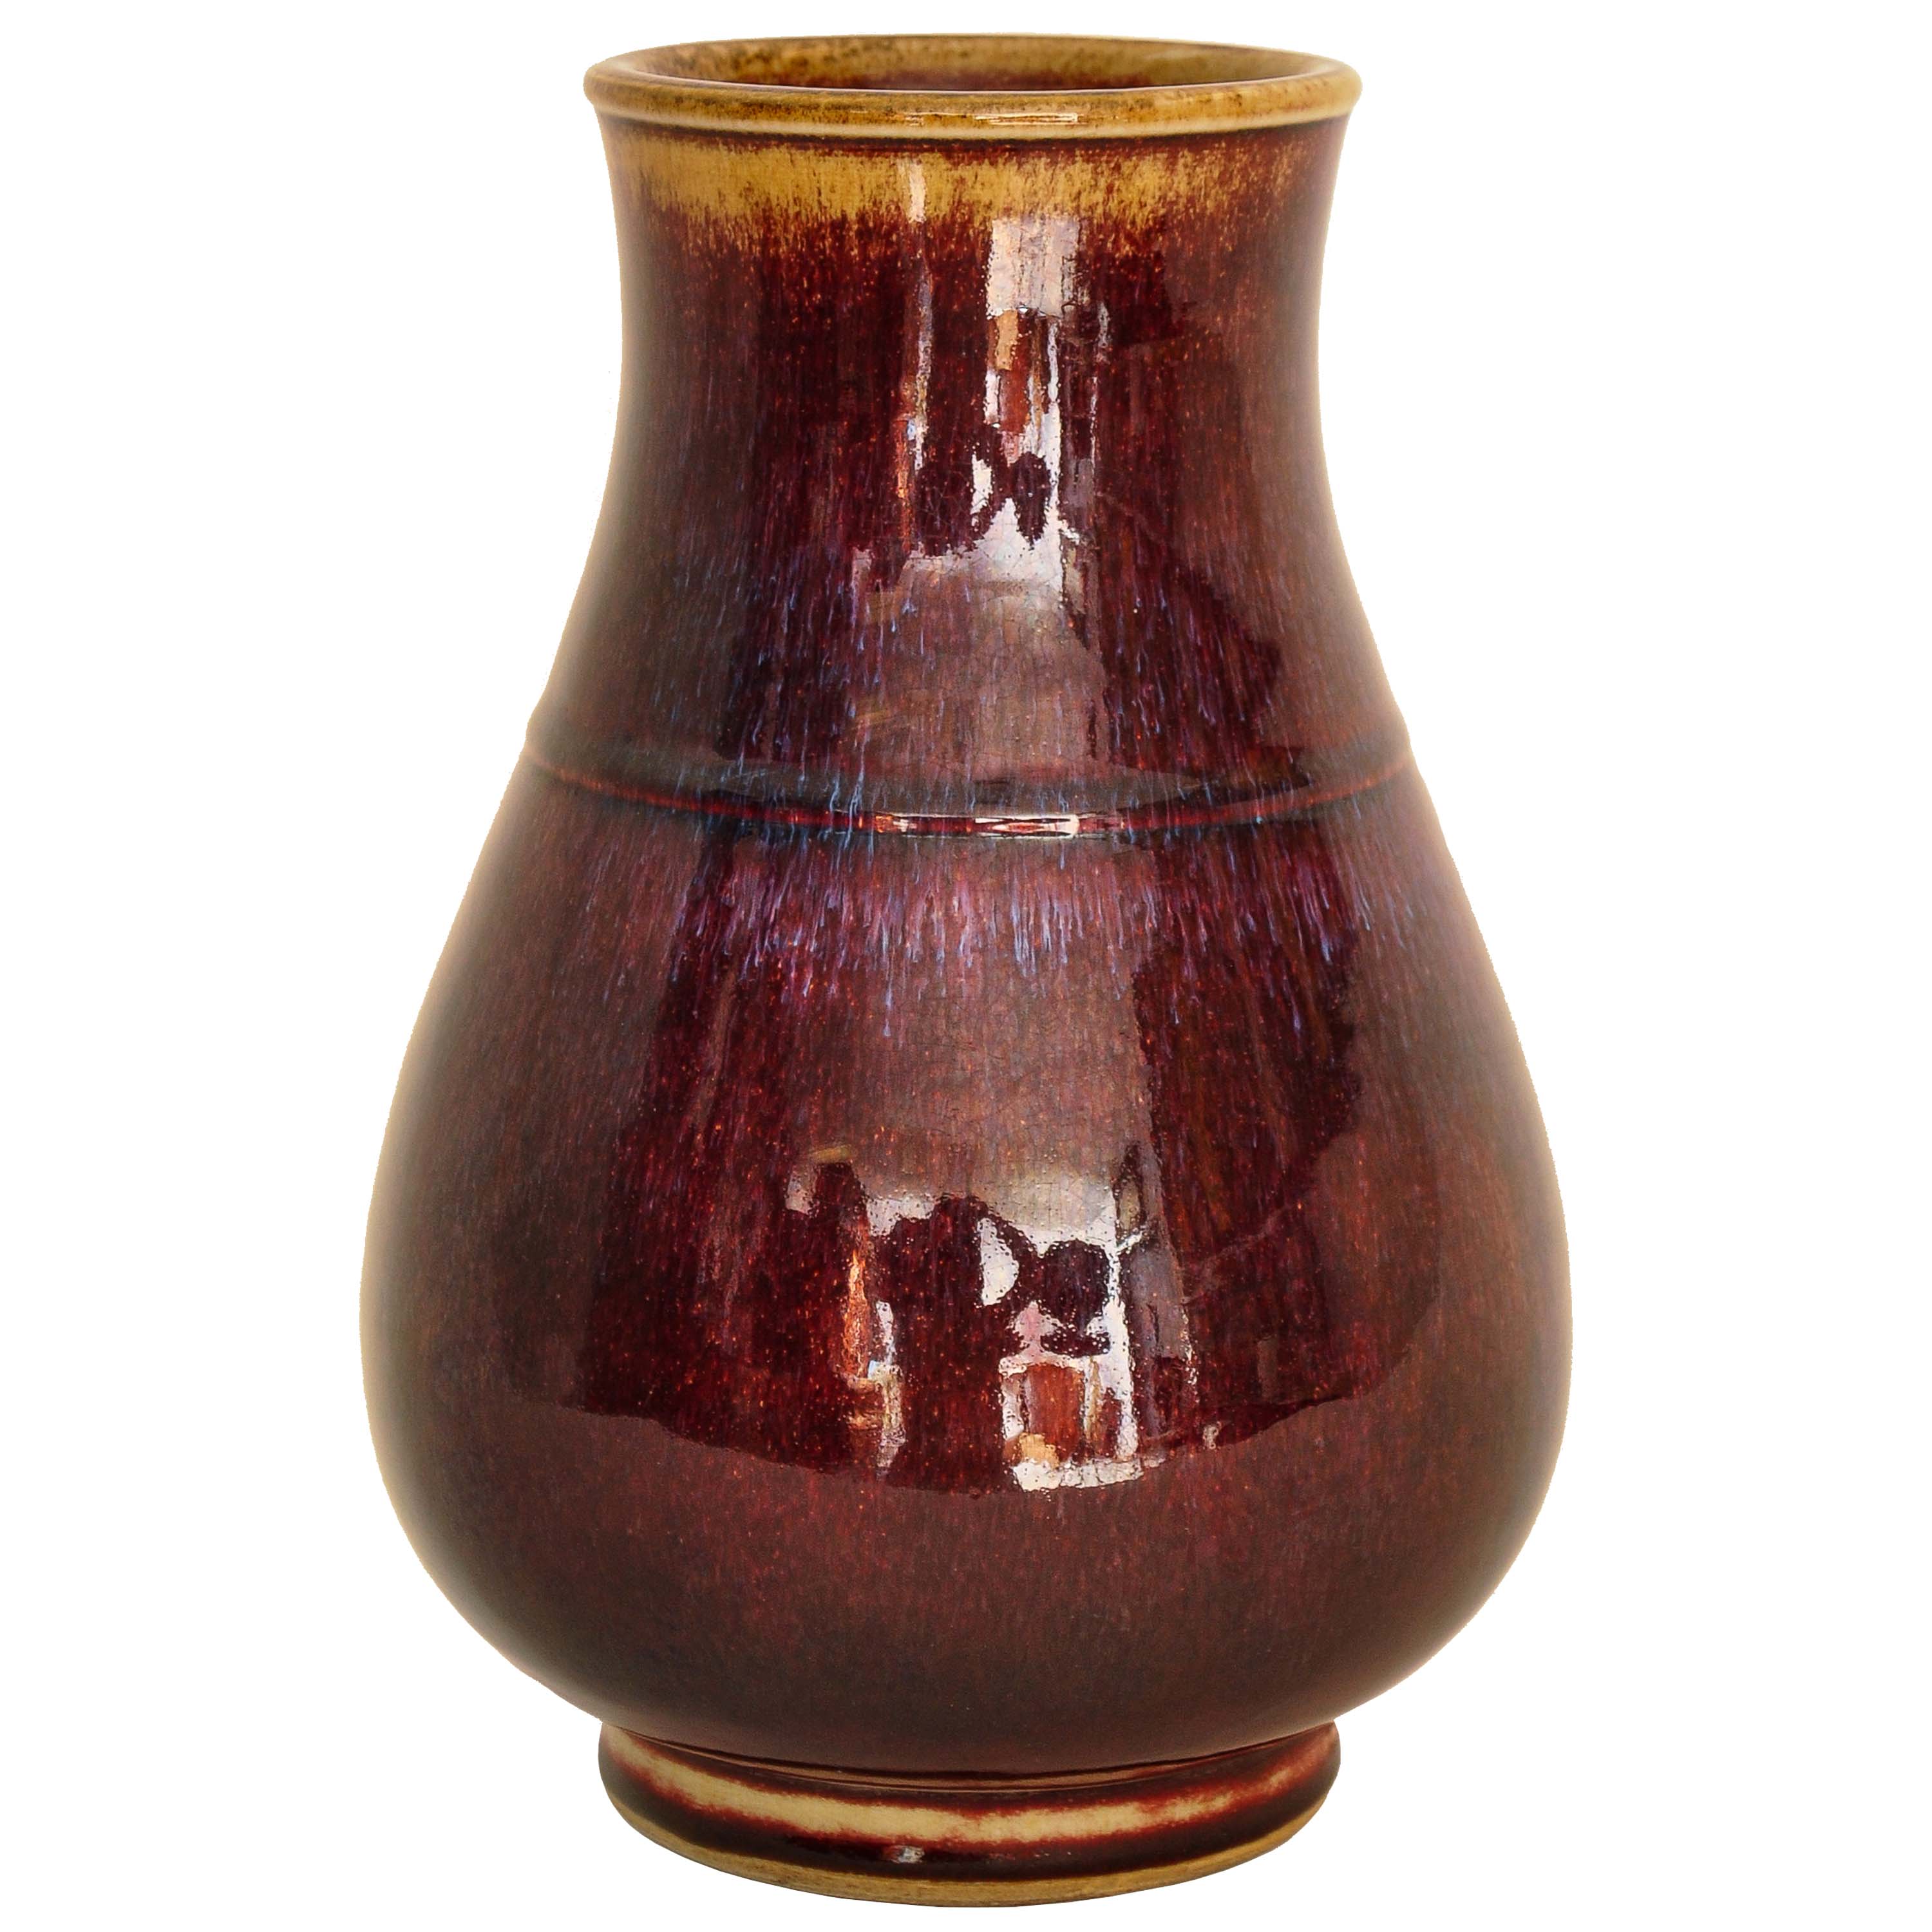 Eine gute antike chinesische flammglasierte Hu-förmige Porzellanvase aus der Qing-Dynastie, um 1850.
Die Hu-förmige Vase hat einen rötlich auberginefarbenen, flammglasierten Körper, der Rand und der Fuß haben eine hellere Farbe mit violetten